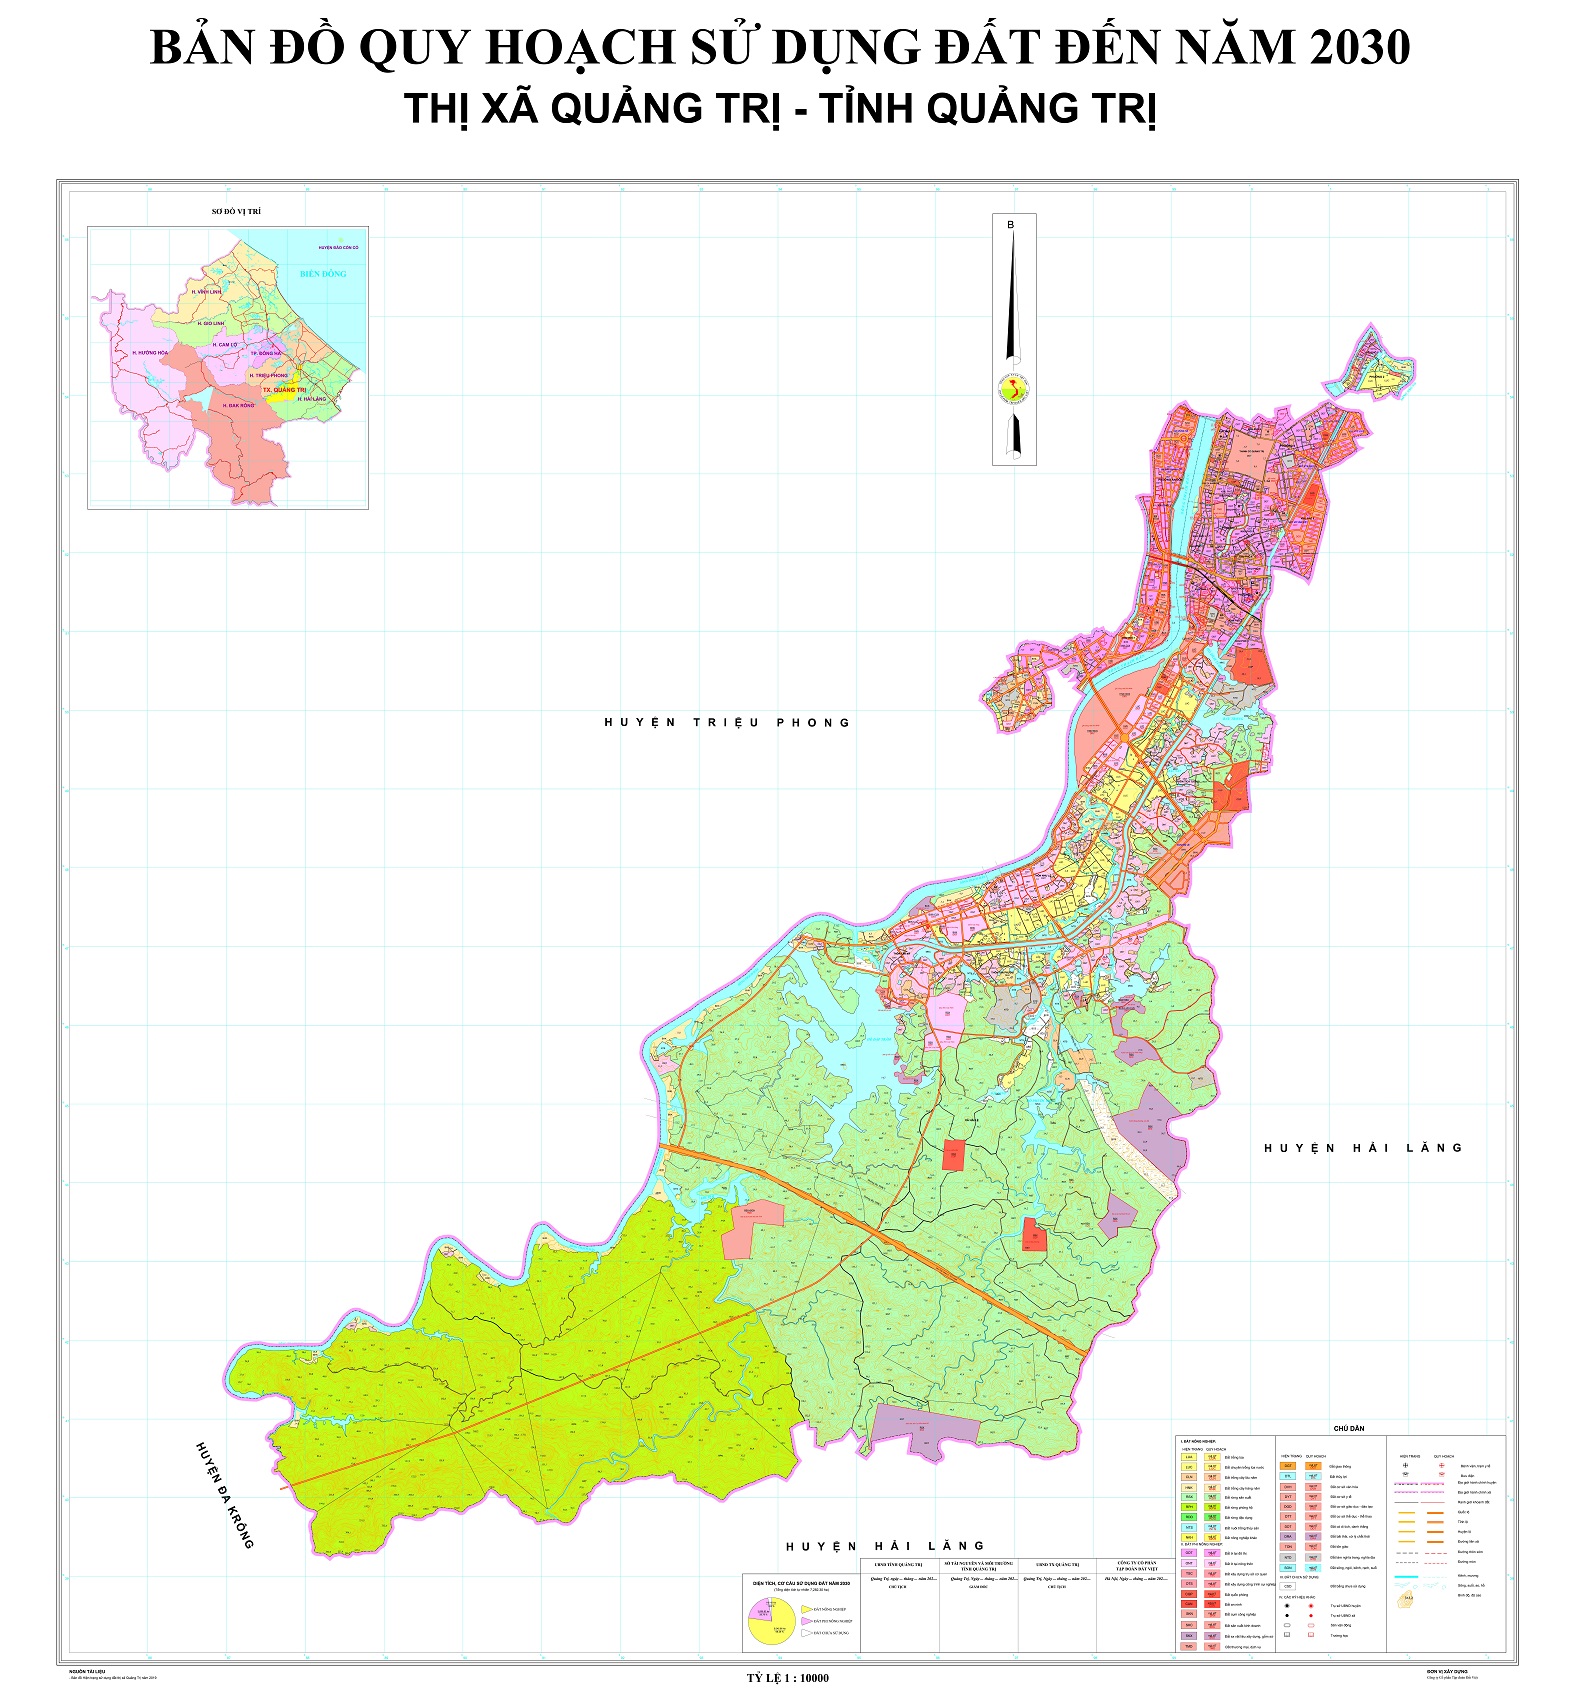 Bản đồ quy hoạch thị xã Quảng Trị, tỉnh Quảng Trị đến năm 2030